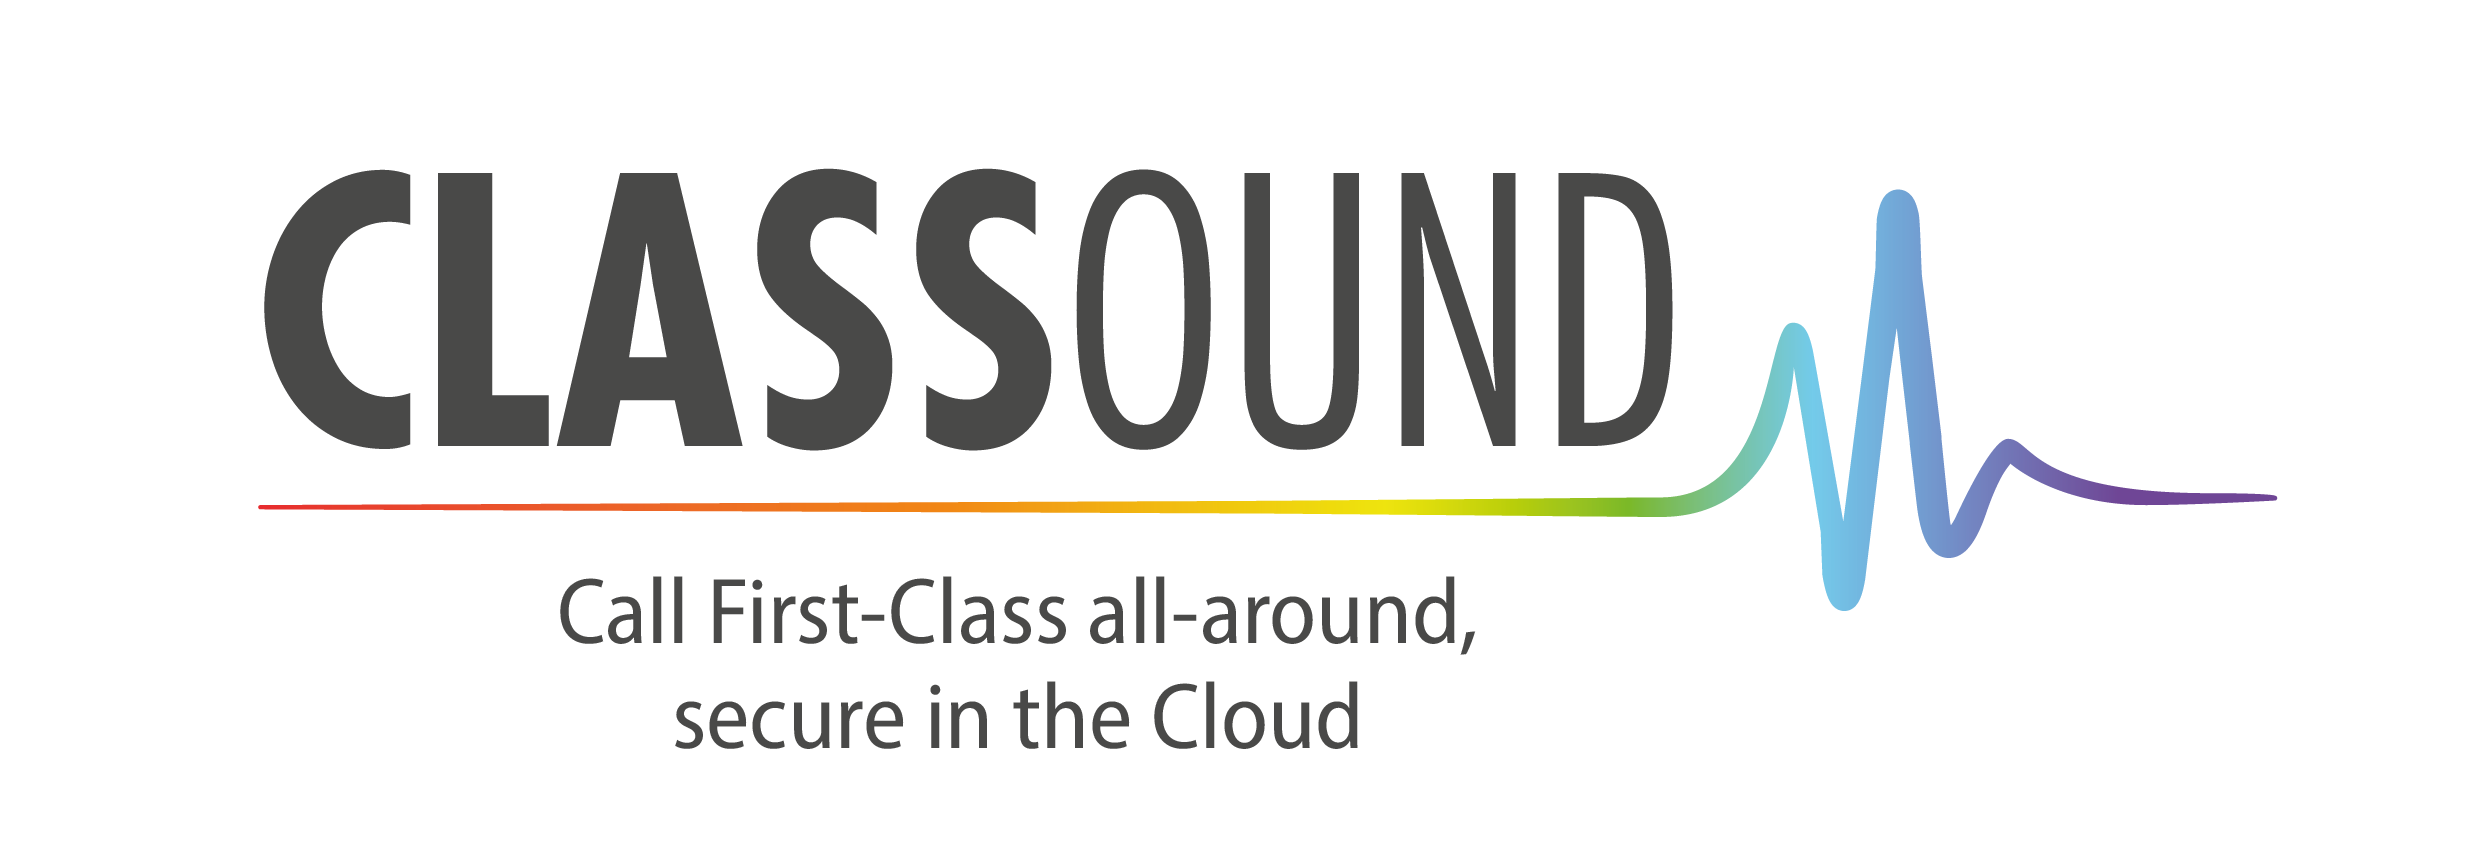 Classound logo